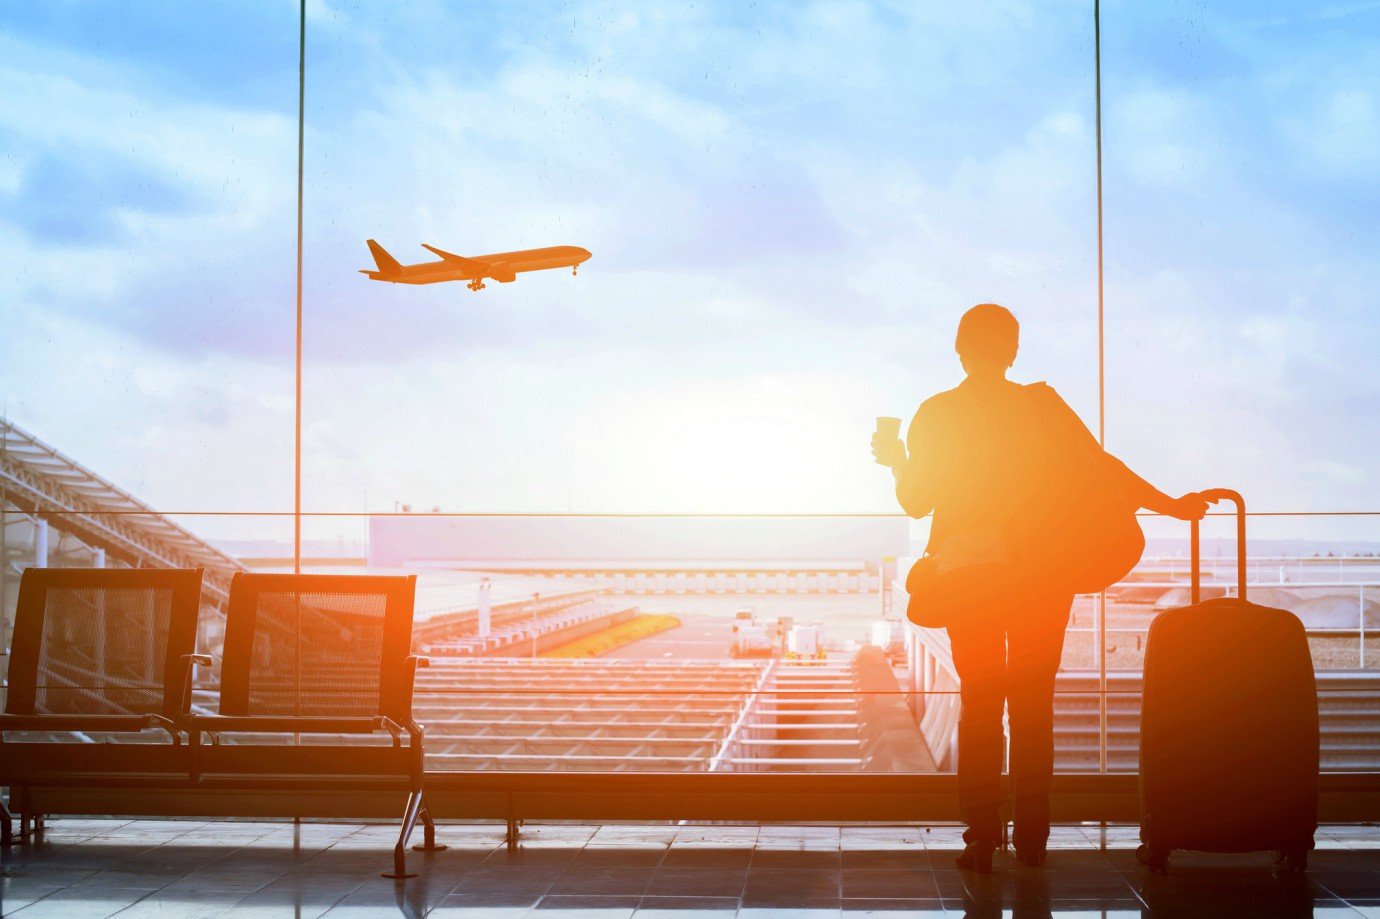 Imagem de um viajante no aeroporto observando um avião